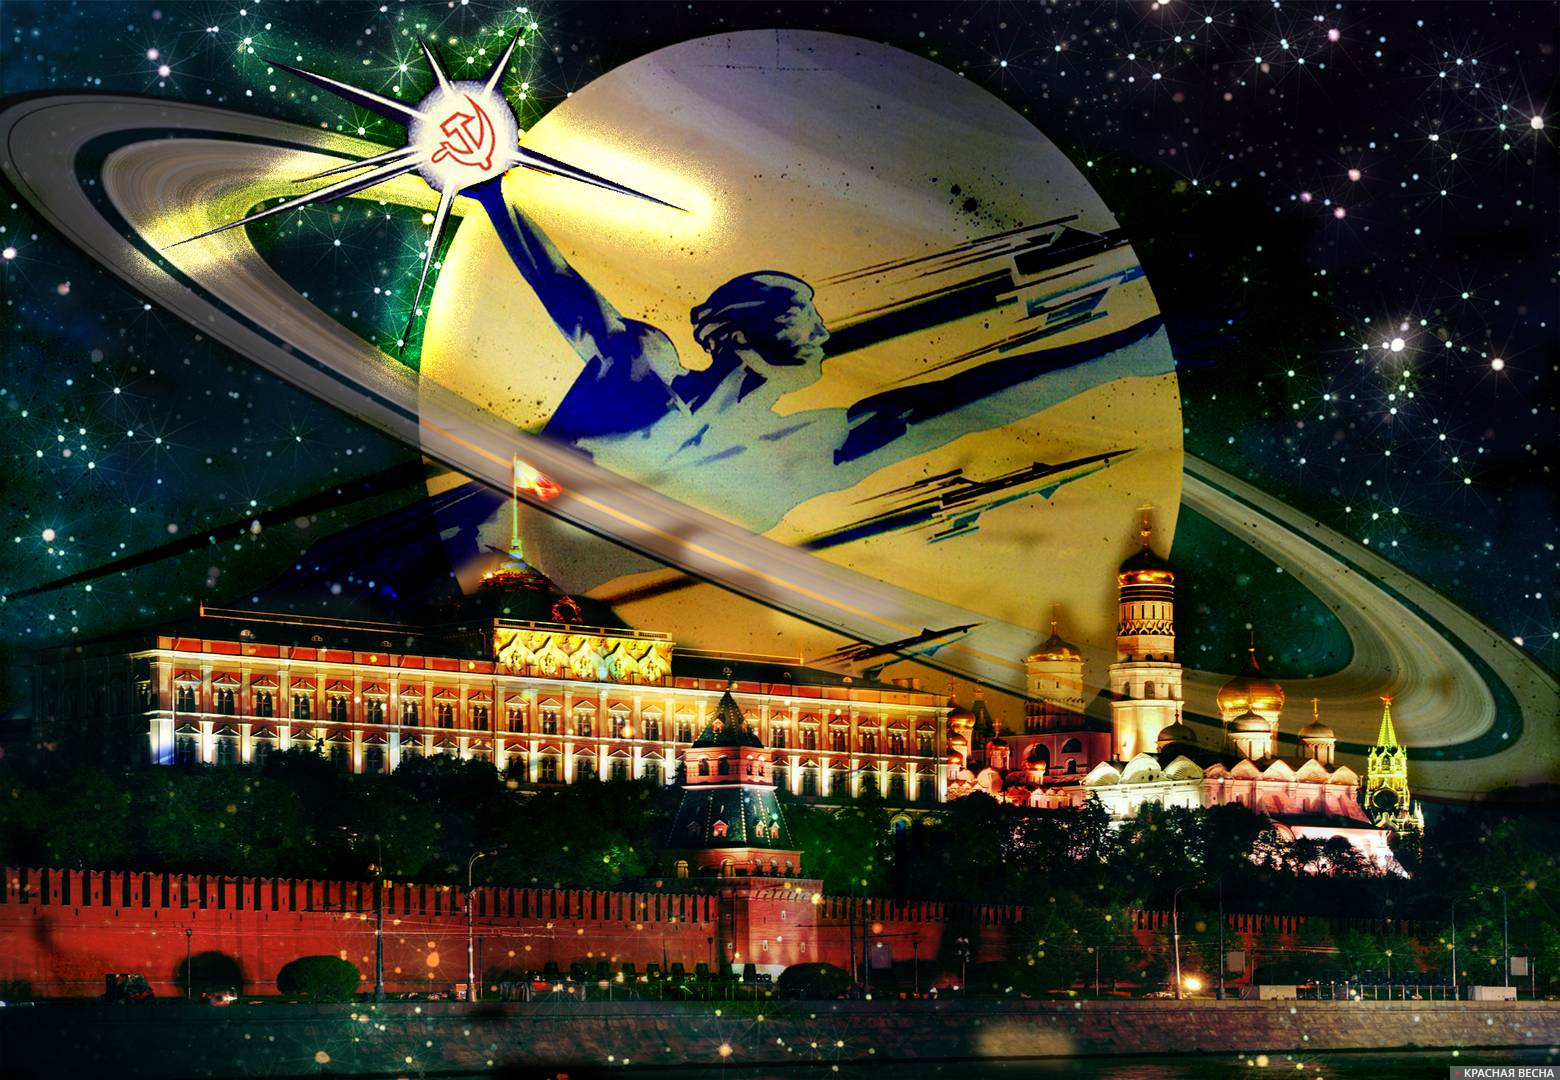 Россия великая космическая